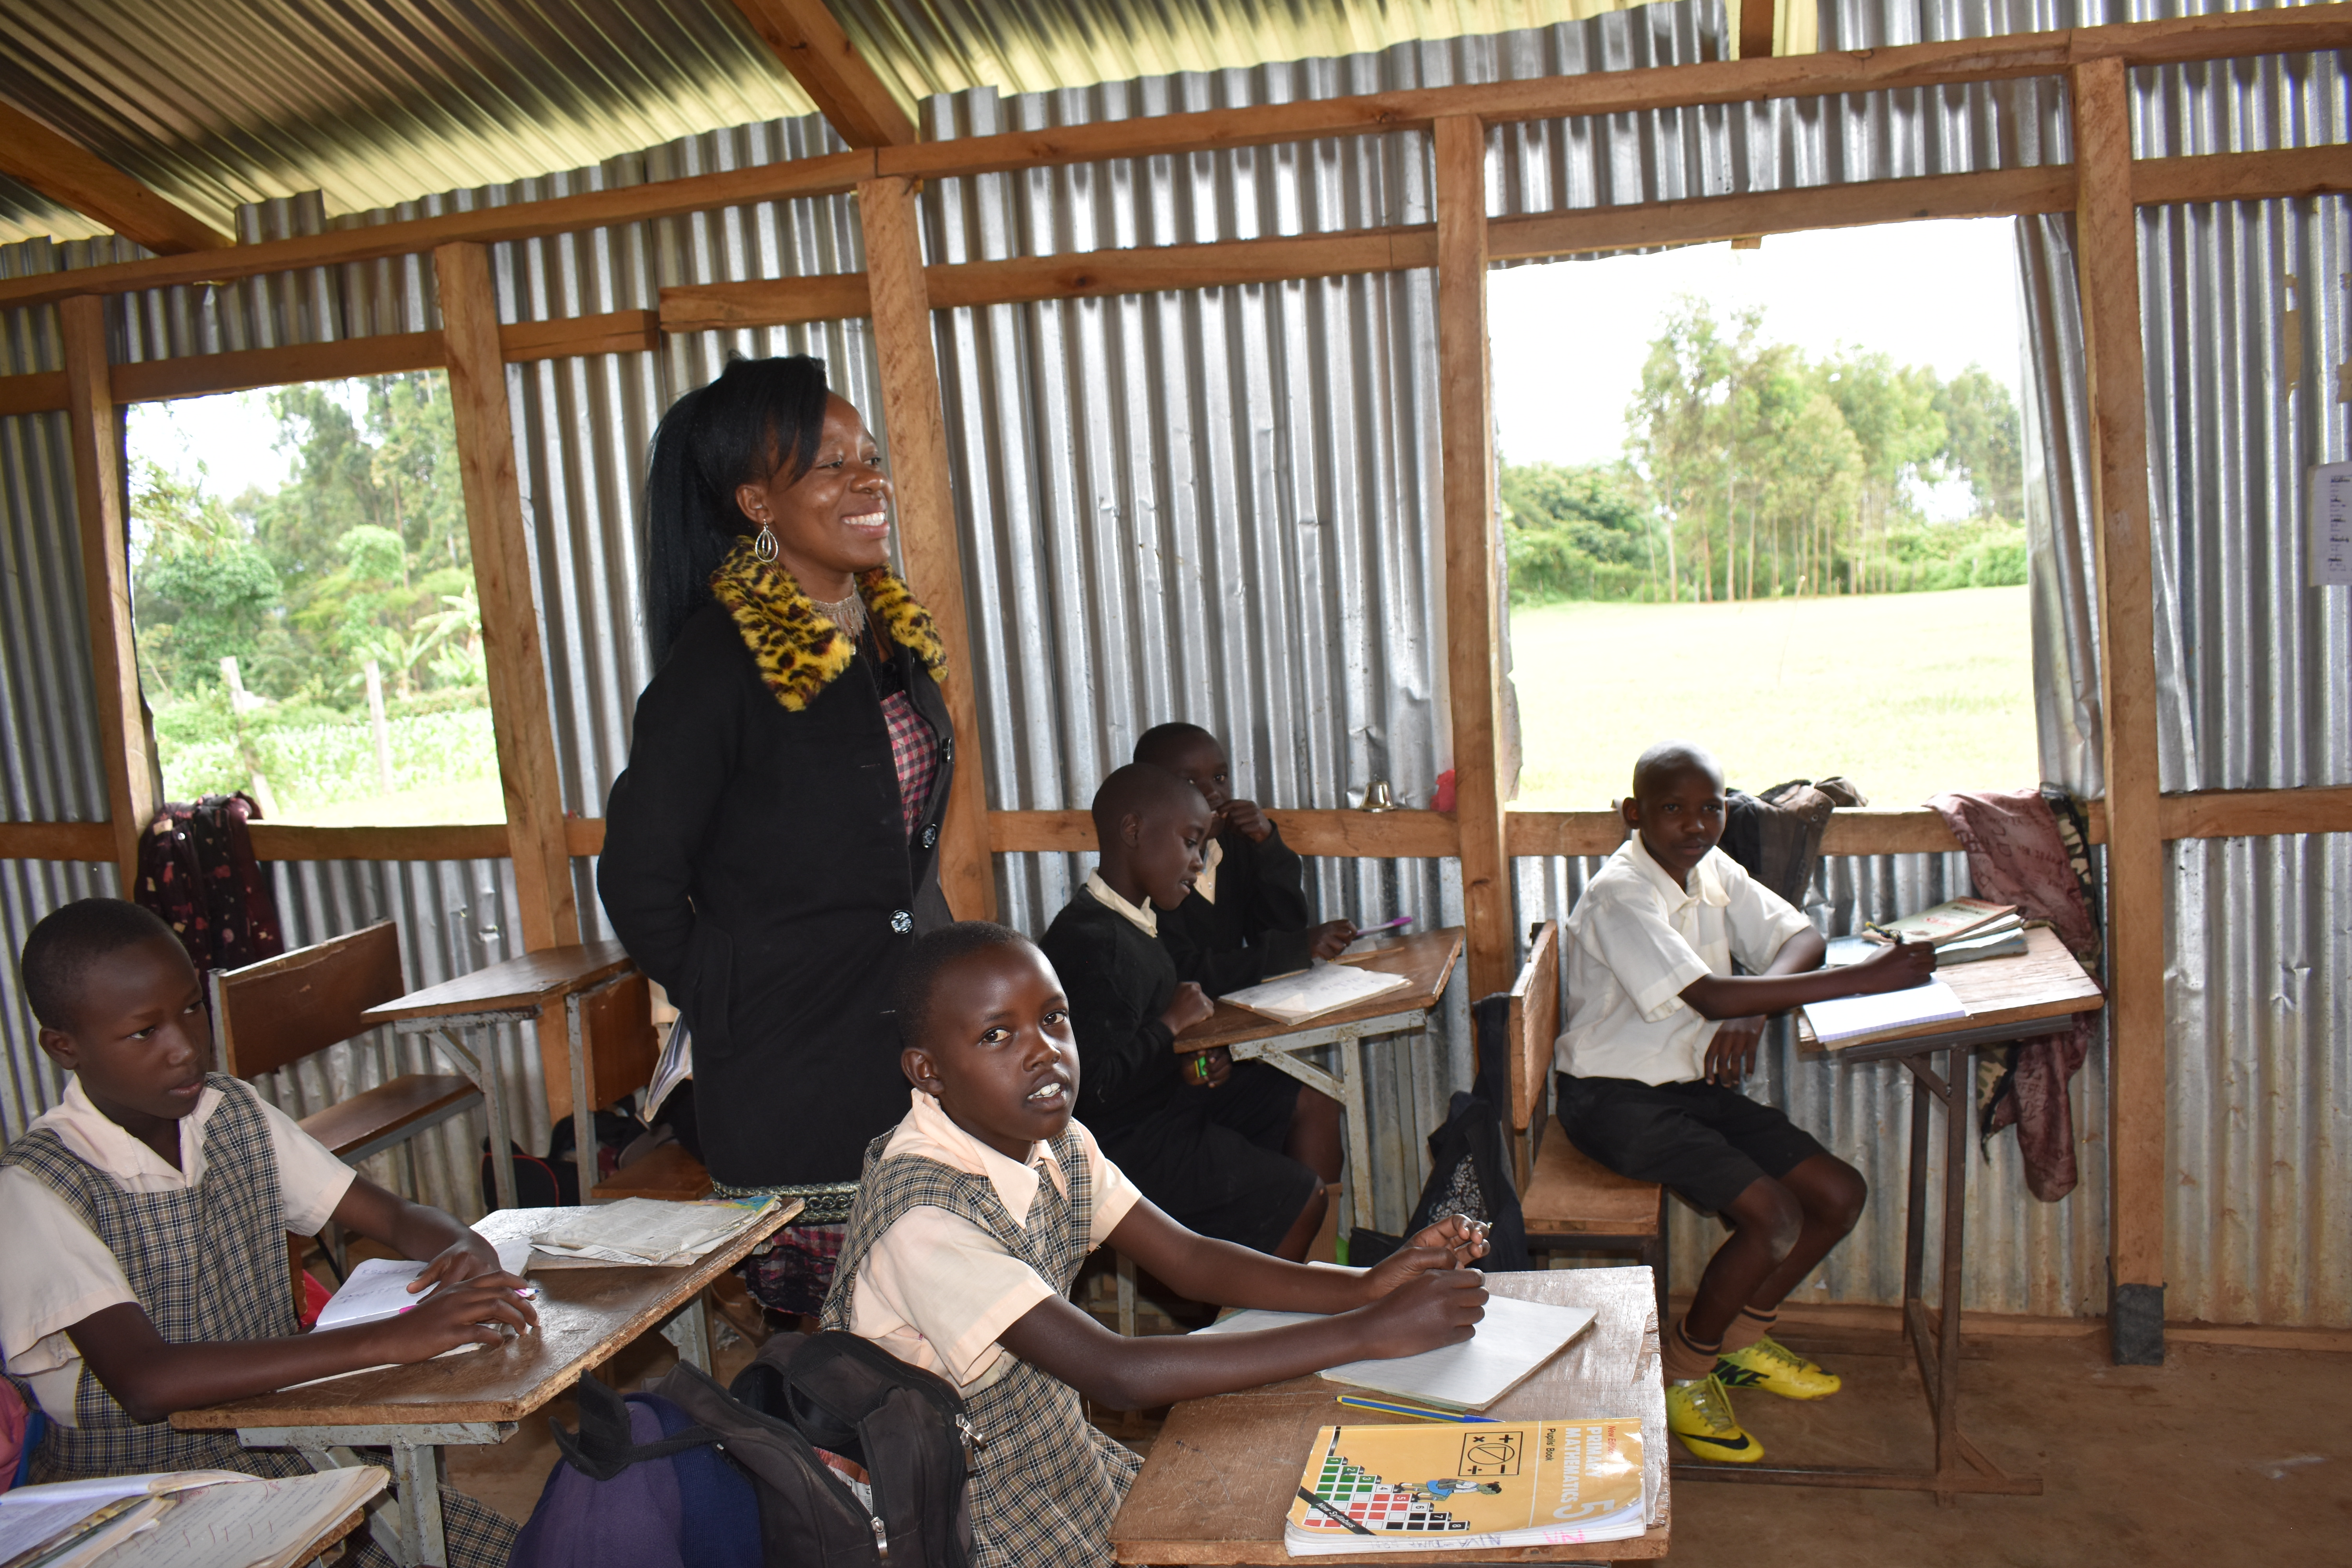 A Kenyan teacher walks between rows of students inside her classroom.